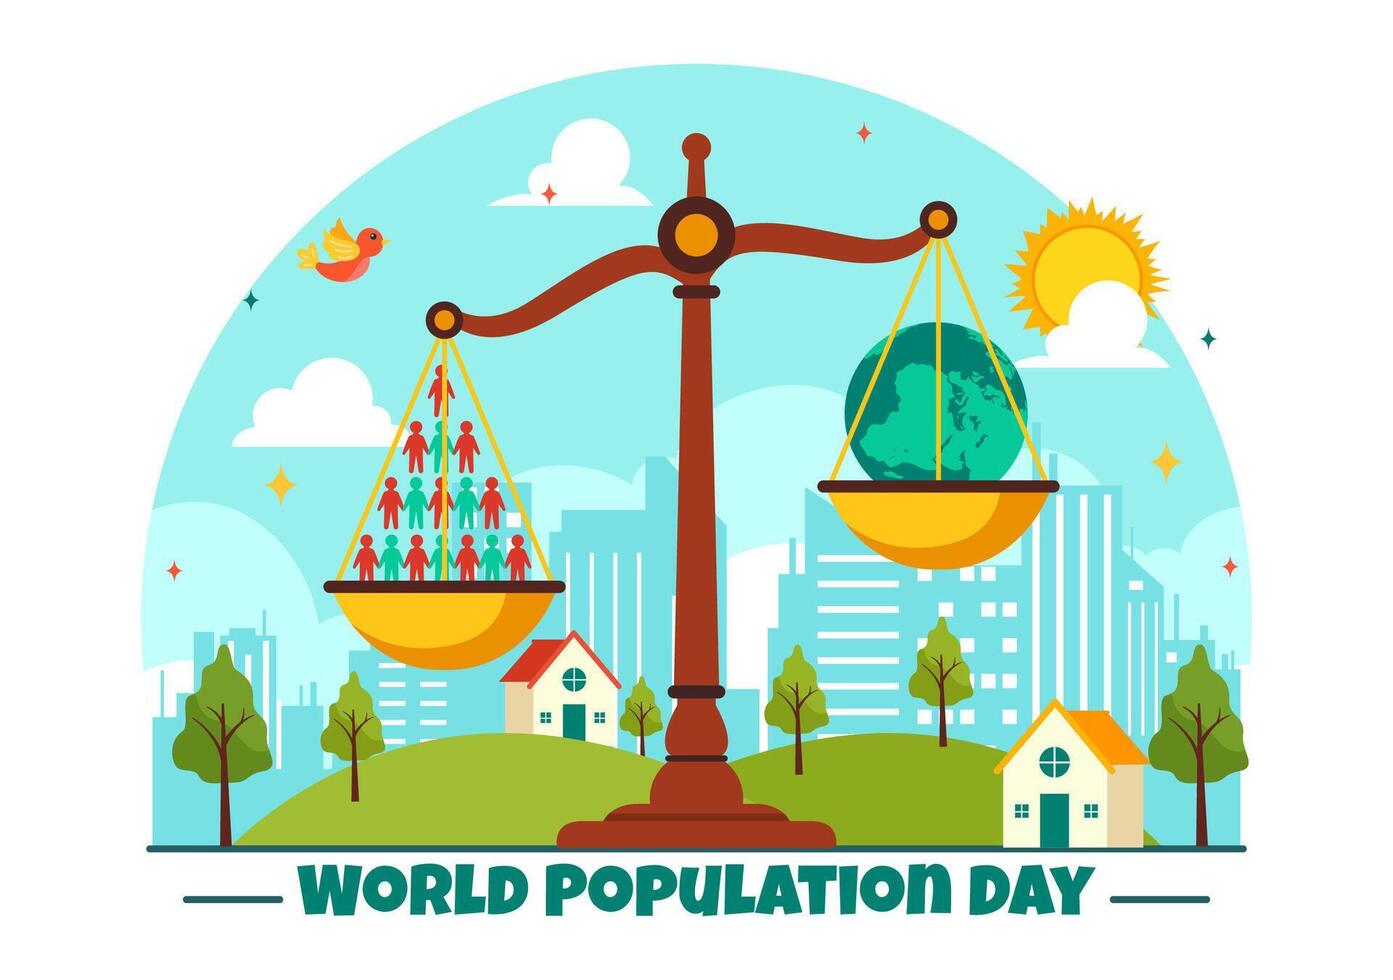 mundo población día ilustración en 11 julio a aumento conciencia de global poblaciones problemas en plano niños dibujos animados antecedentes vector